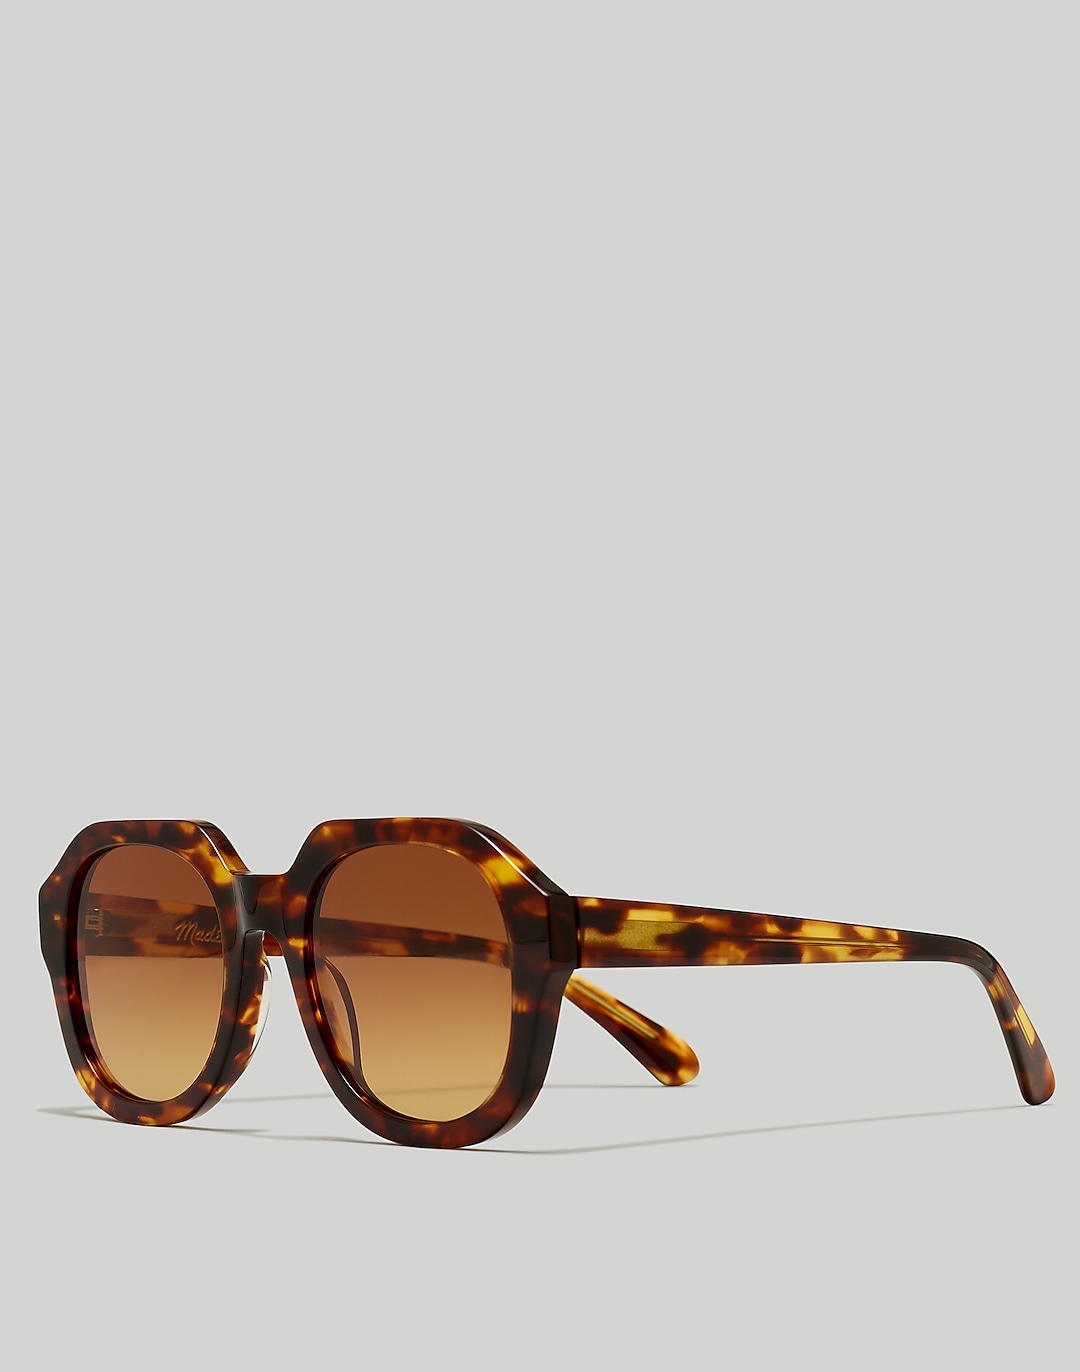 Ralston Sunglasses | Madewell